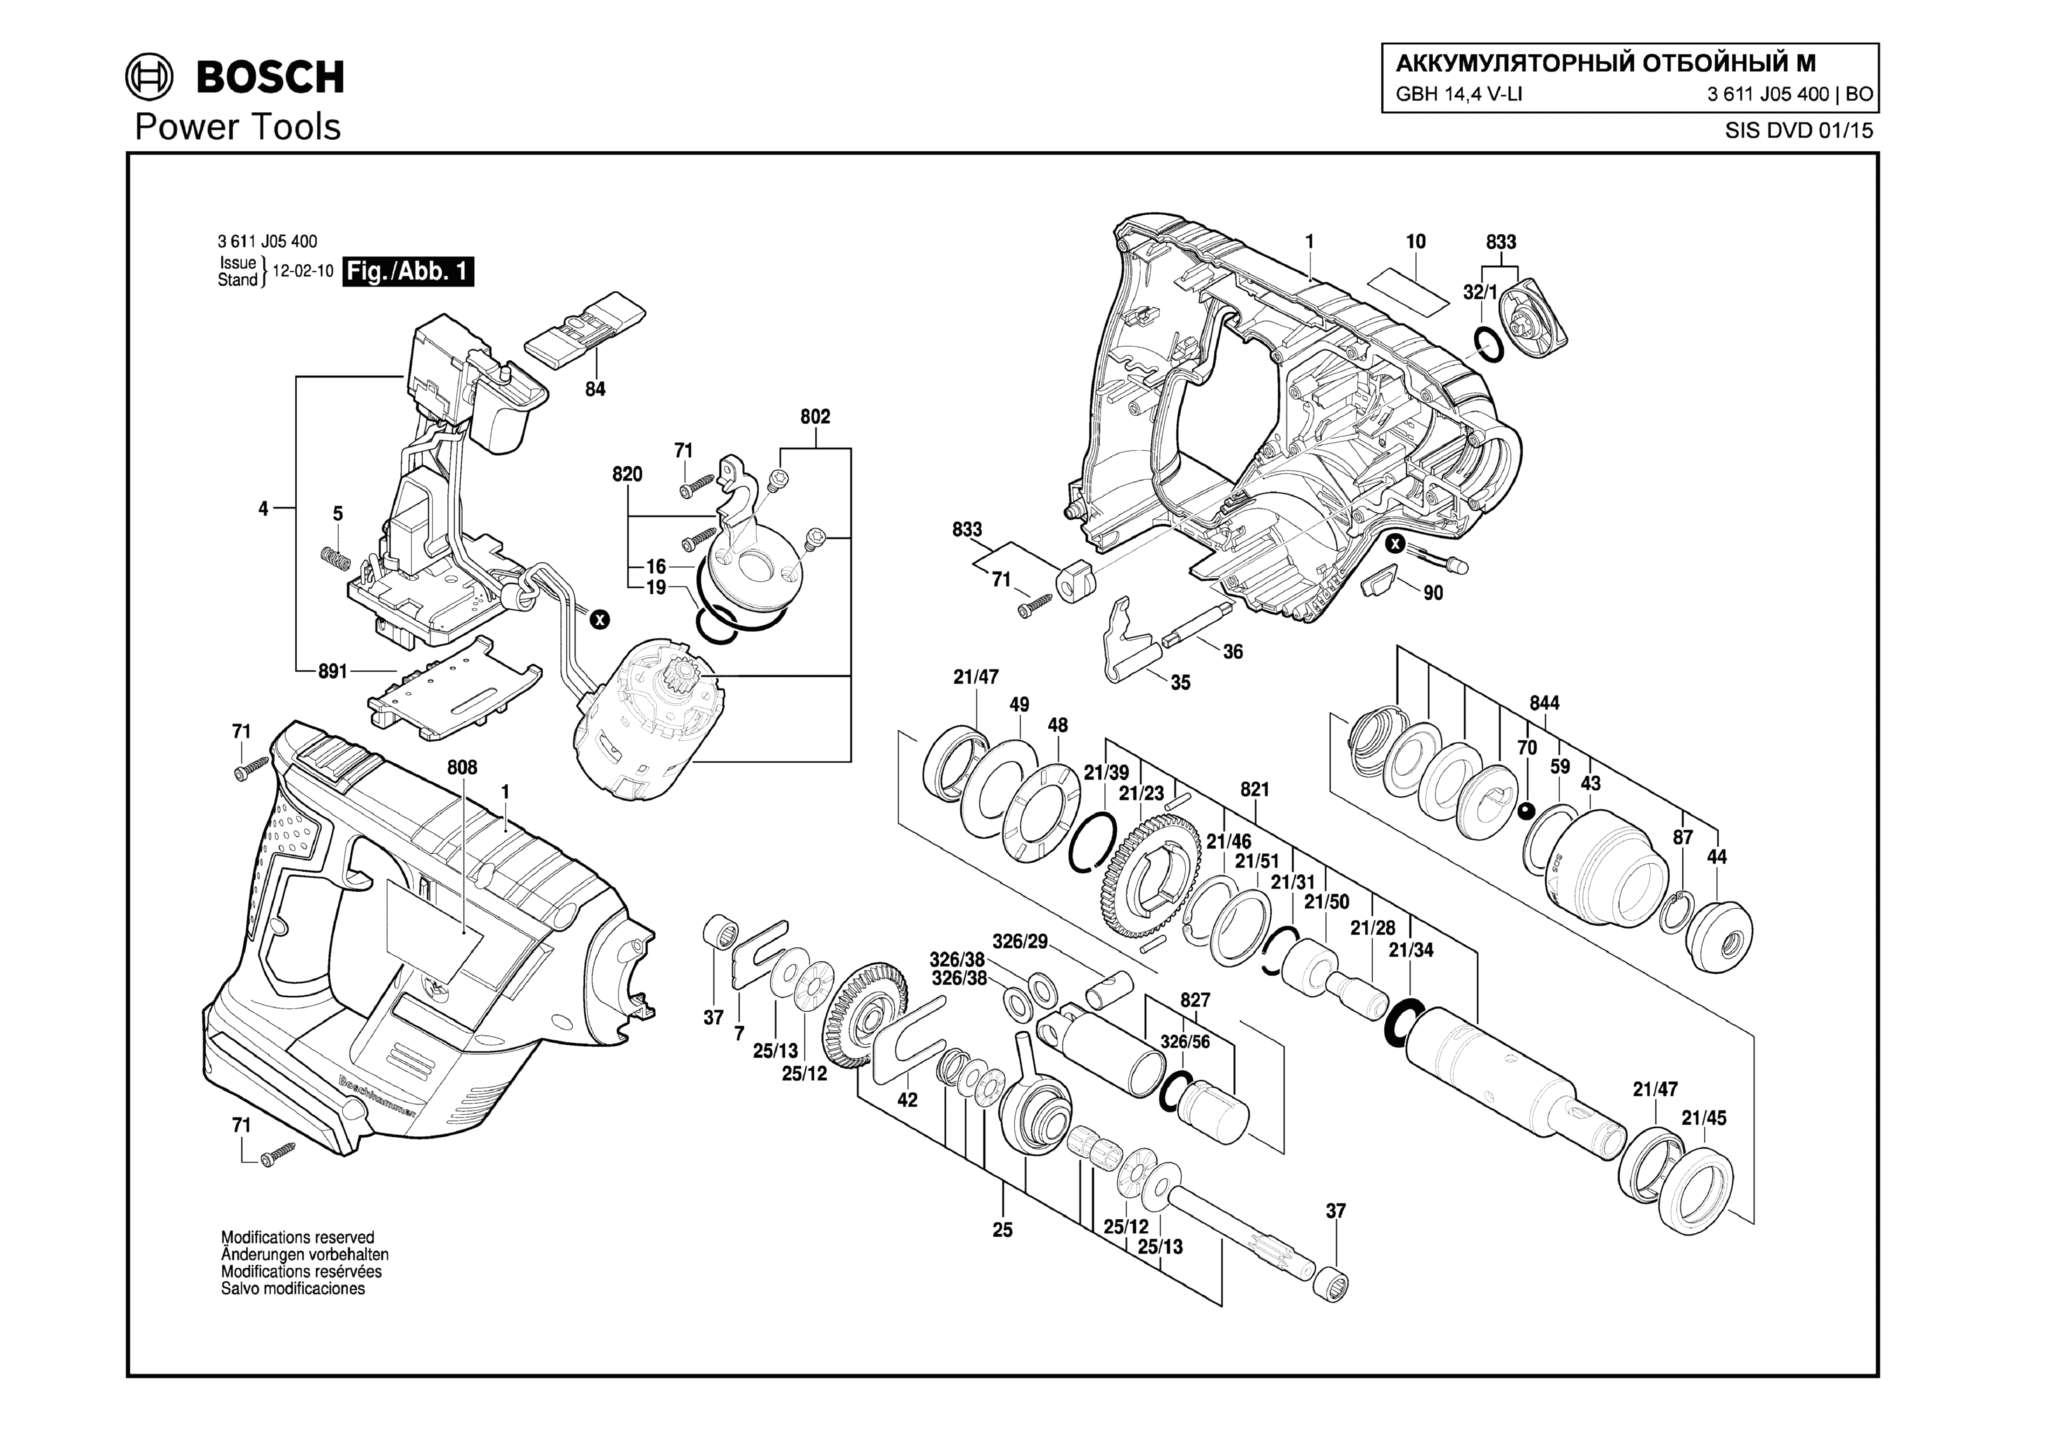 Запчасти, схема и деталировка Bosch GBH 14,4 V-LI (ТИП 3611J05400) (ЧАСТЬ 1)